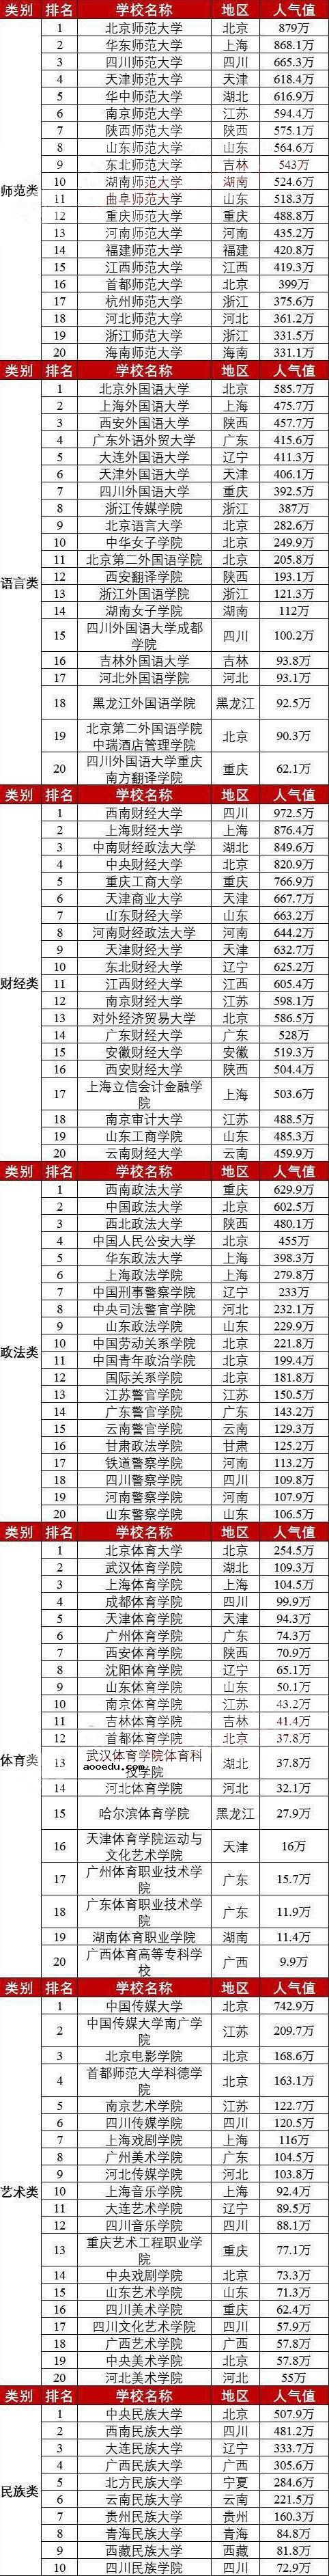 中国前十大学排名 全国高校排行榜